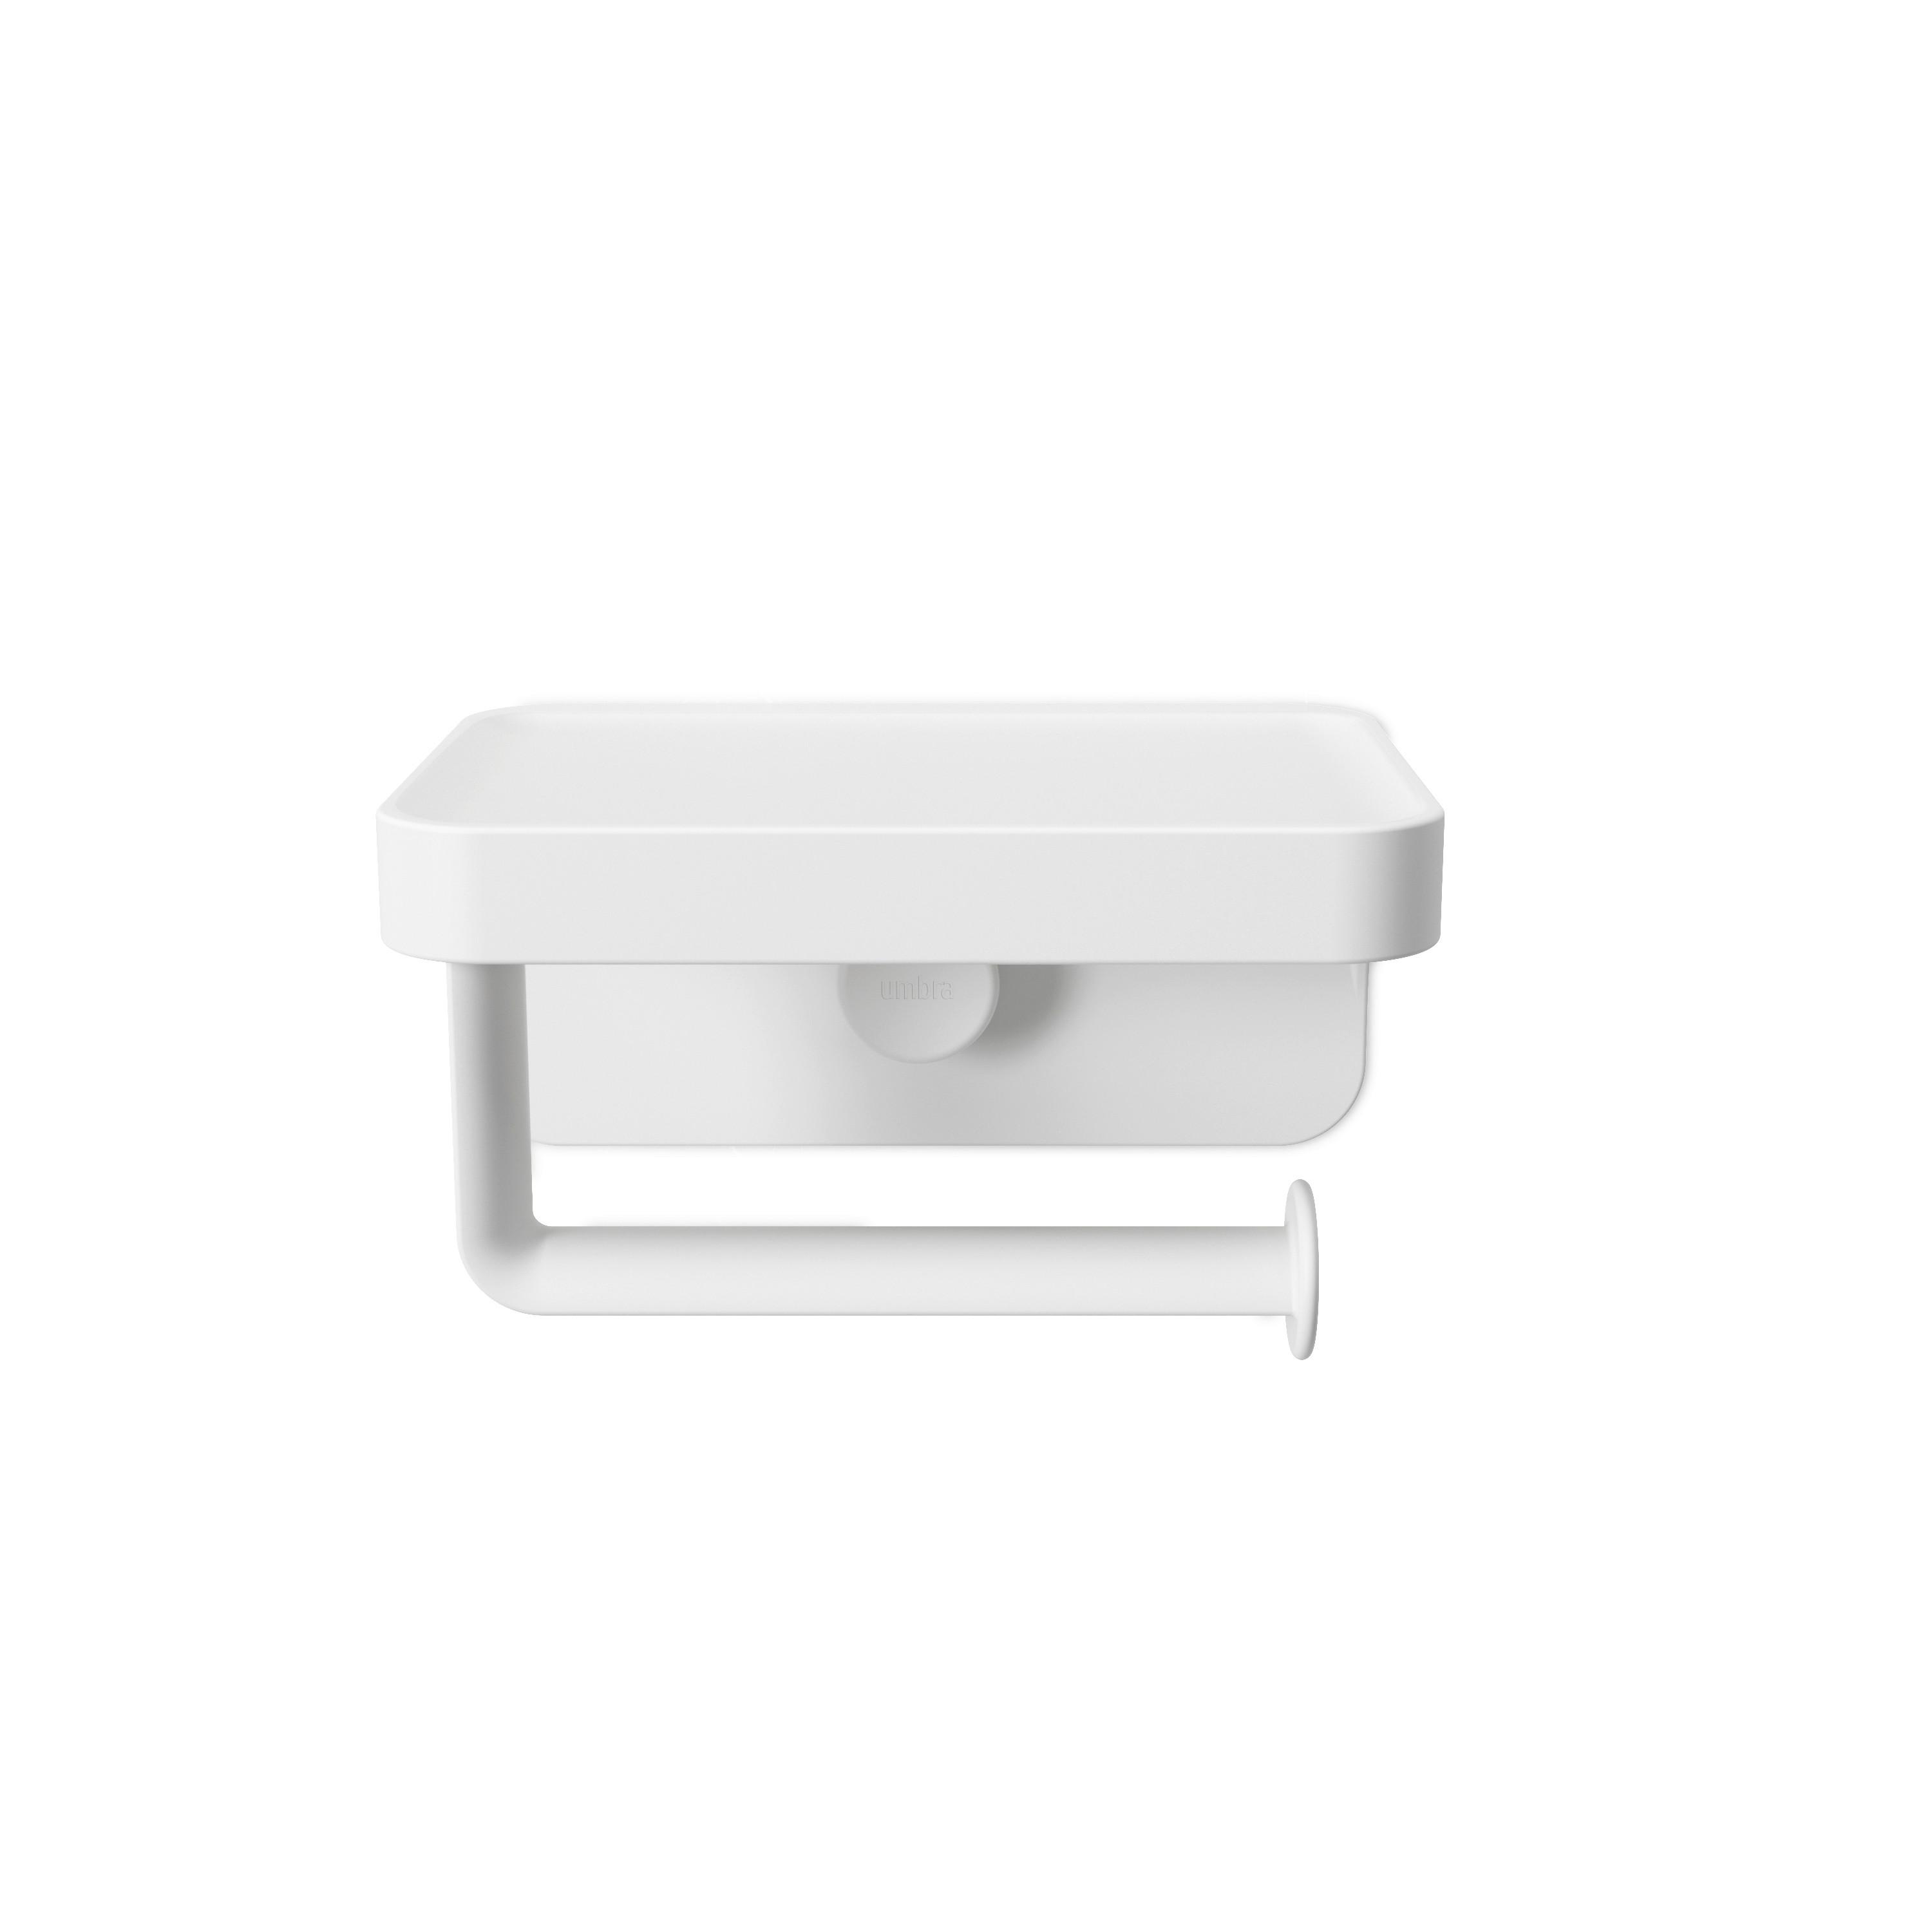 Toilettenpapierhalter Easy in Weiß - Weiß, MODERN, Kunststoff (16/12/9cm) - Premium Living